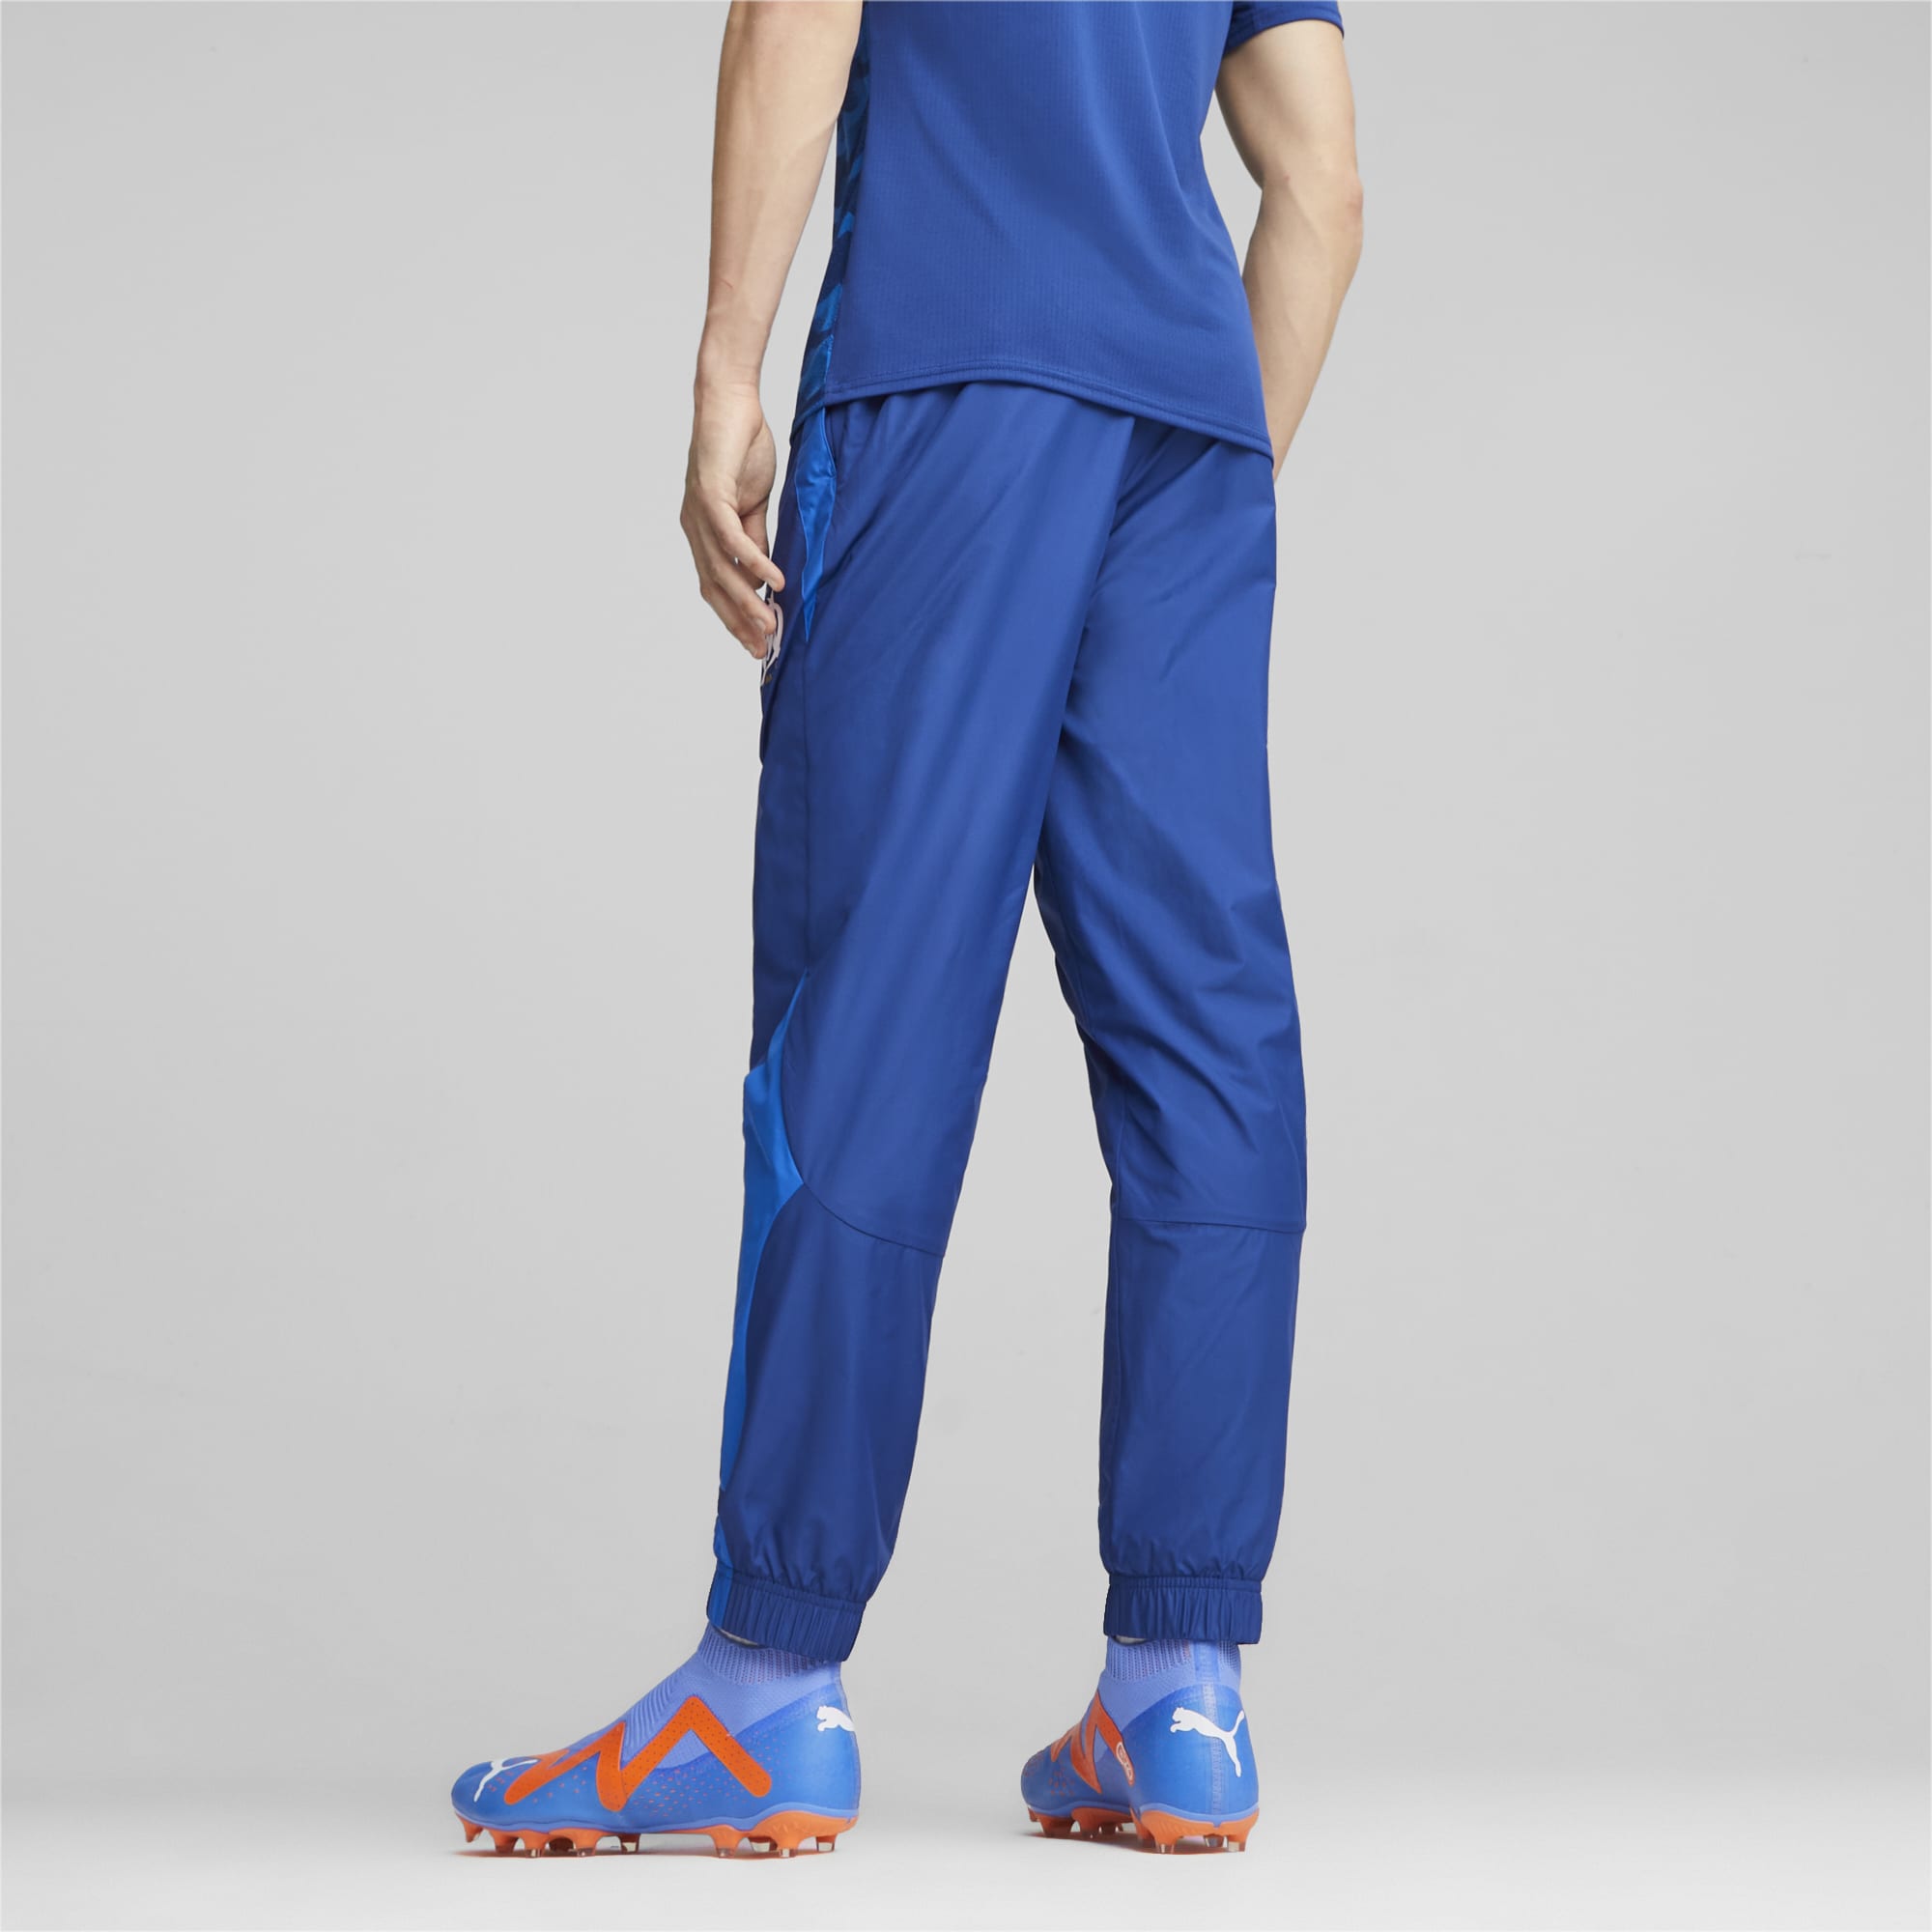 Men's PUMA Olympique De Marseille Prematch Football Pants, Royal Blue, Size S, Clothing